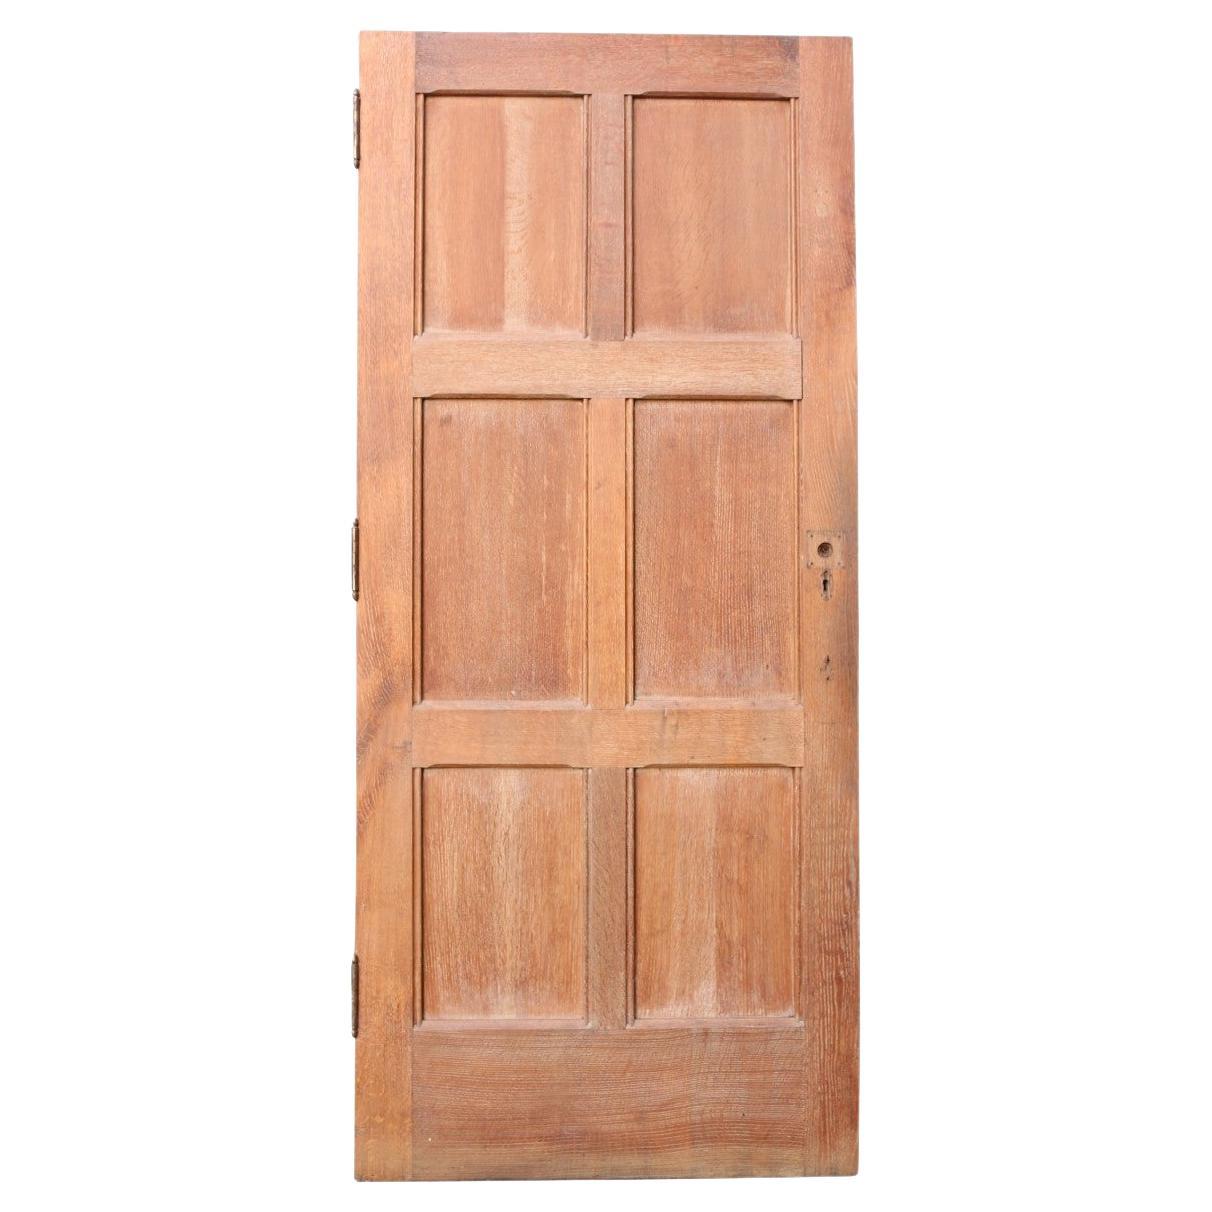 Reclaimed English Oak Six Panel Exterior Door